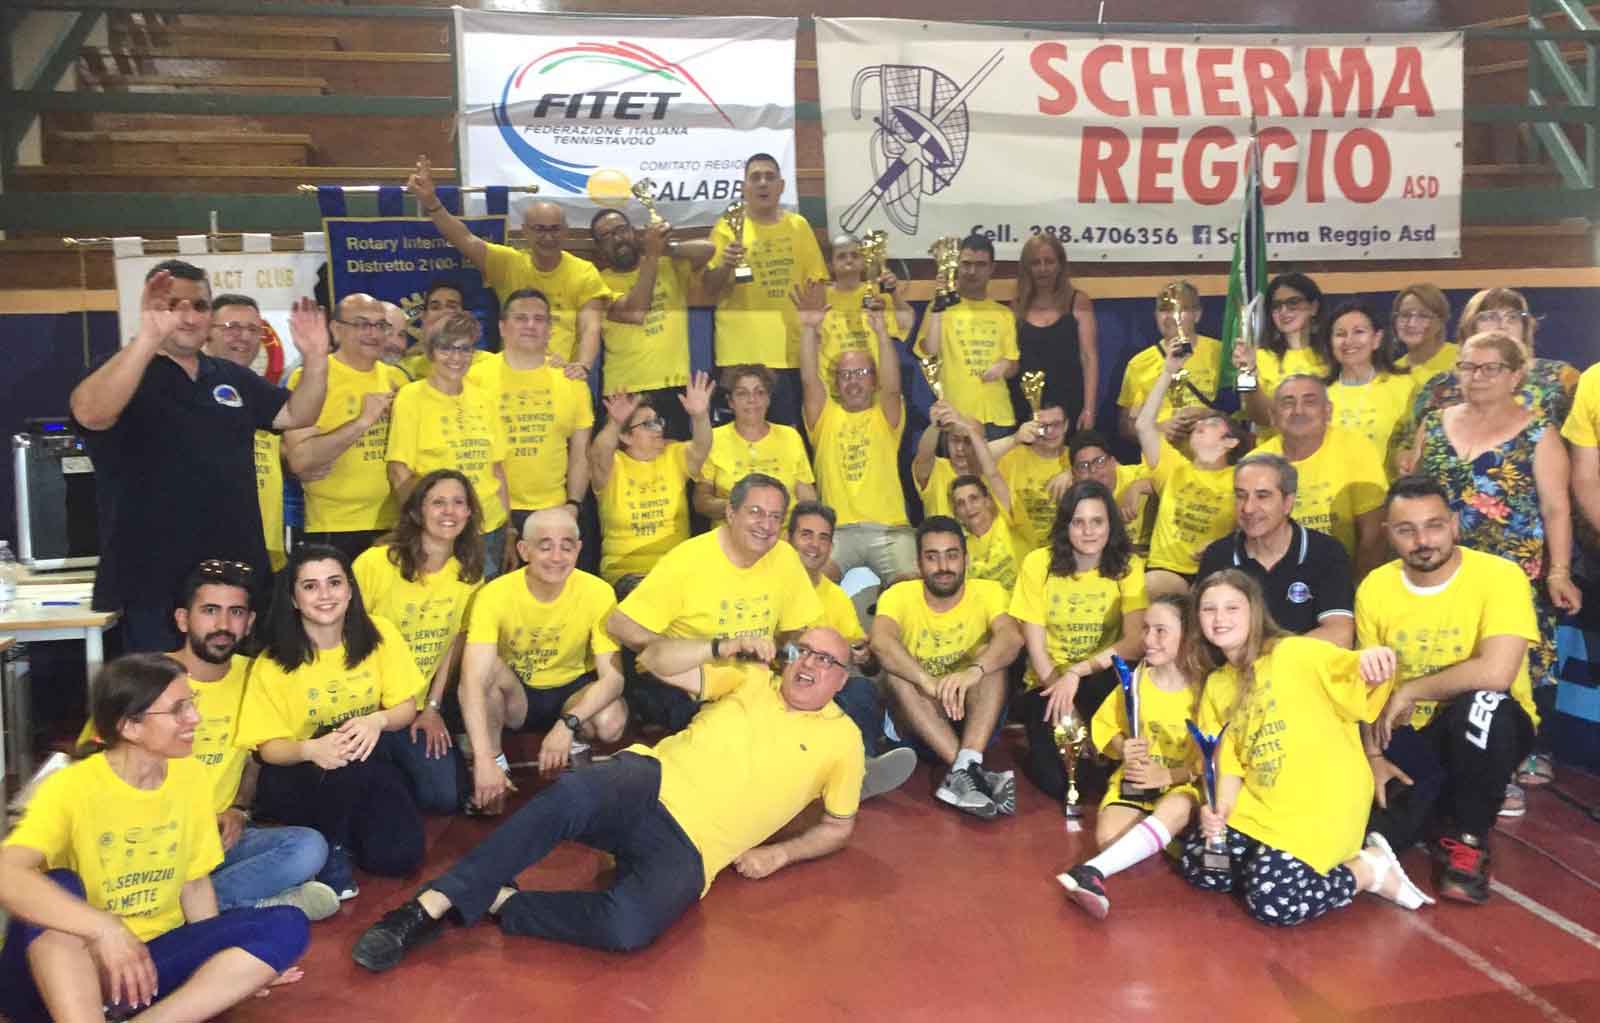 Calabria premiazione evento solidarietà giugno 2019 2